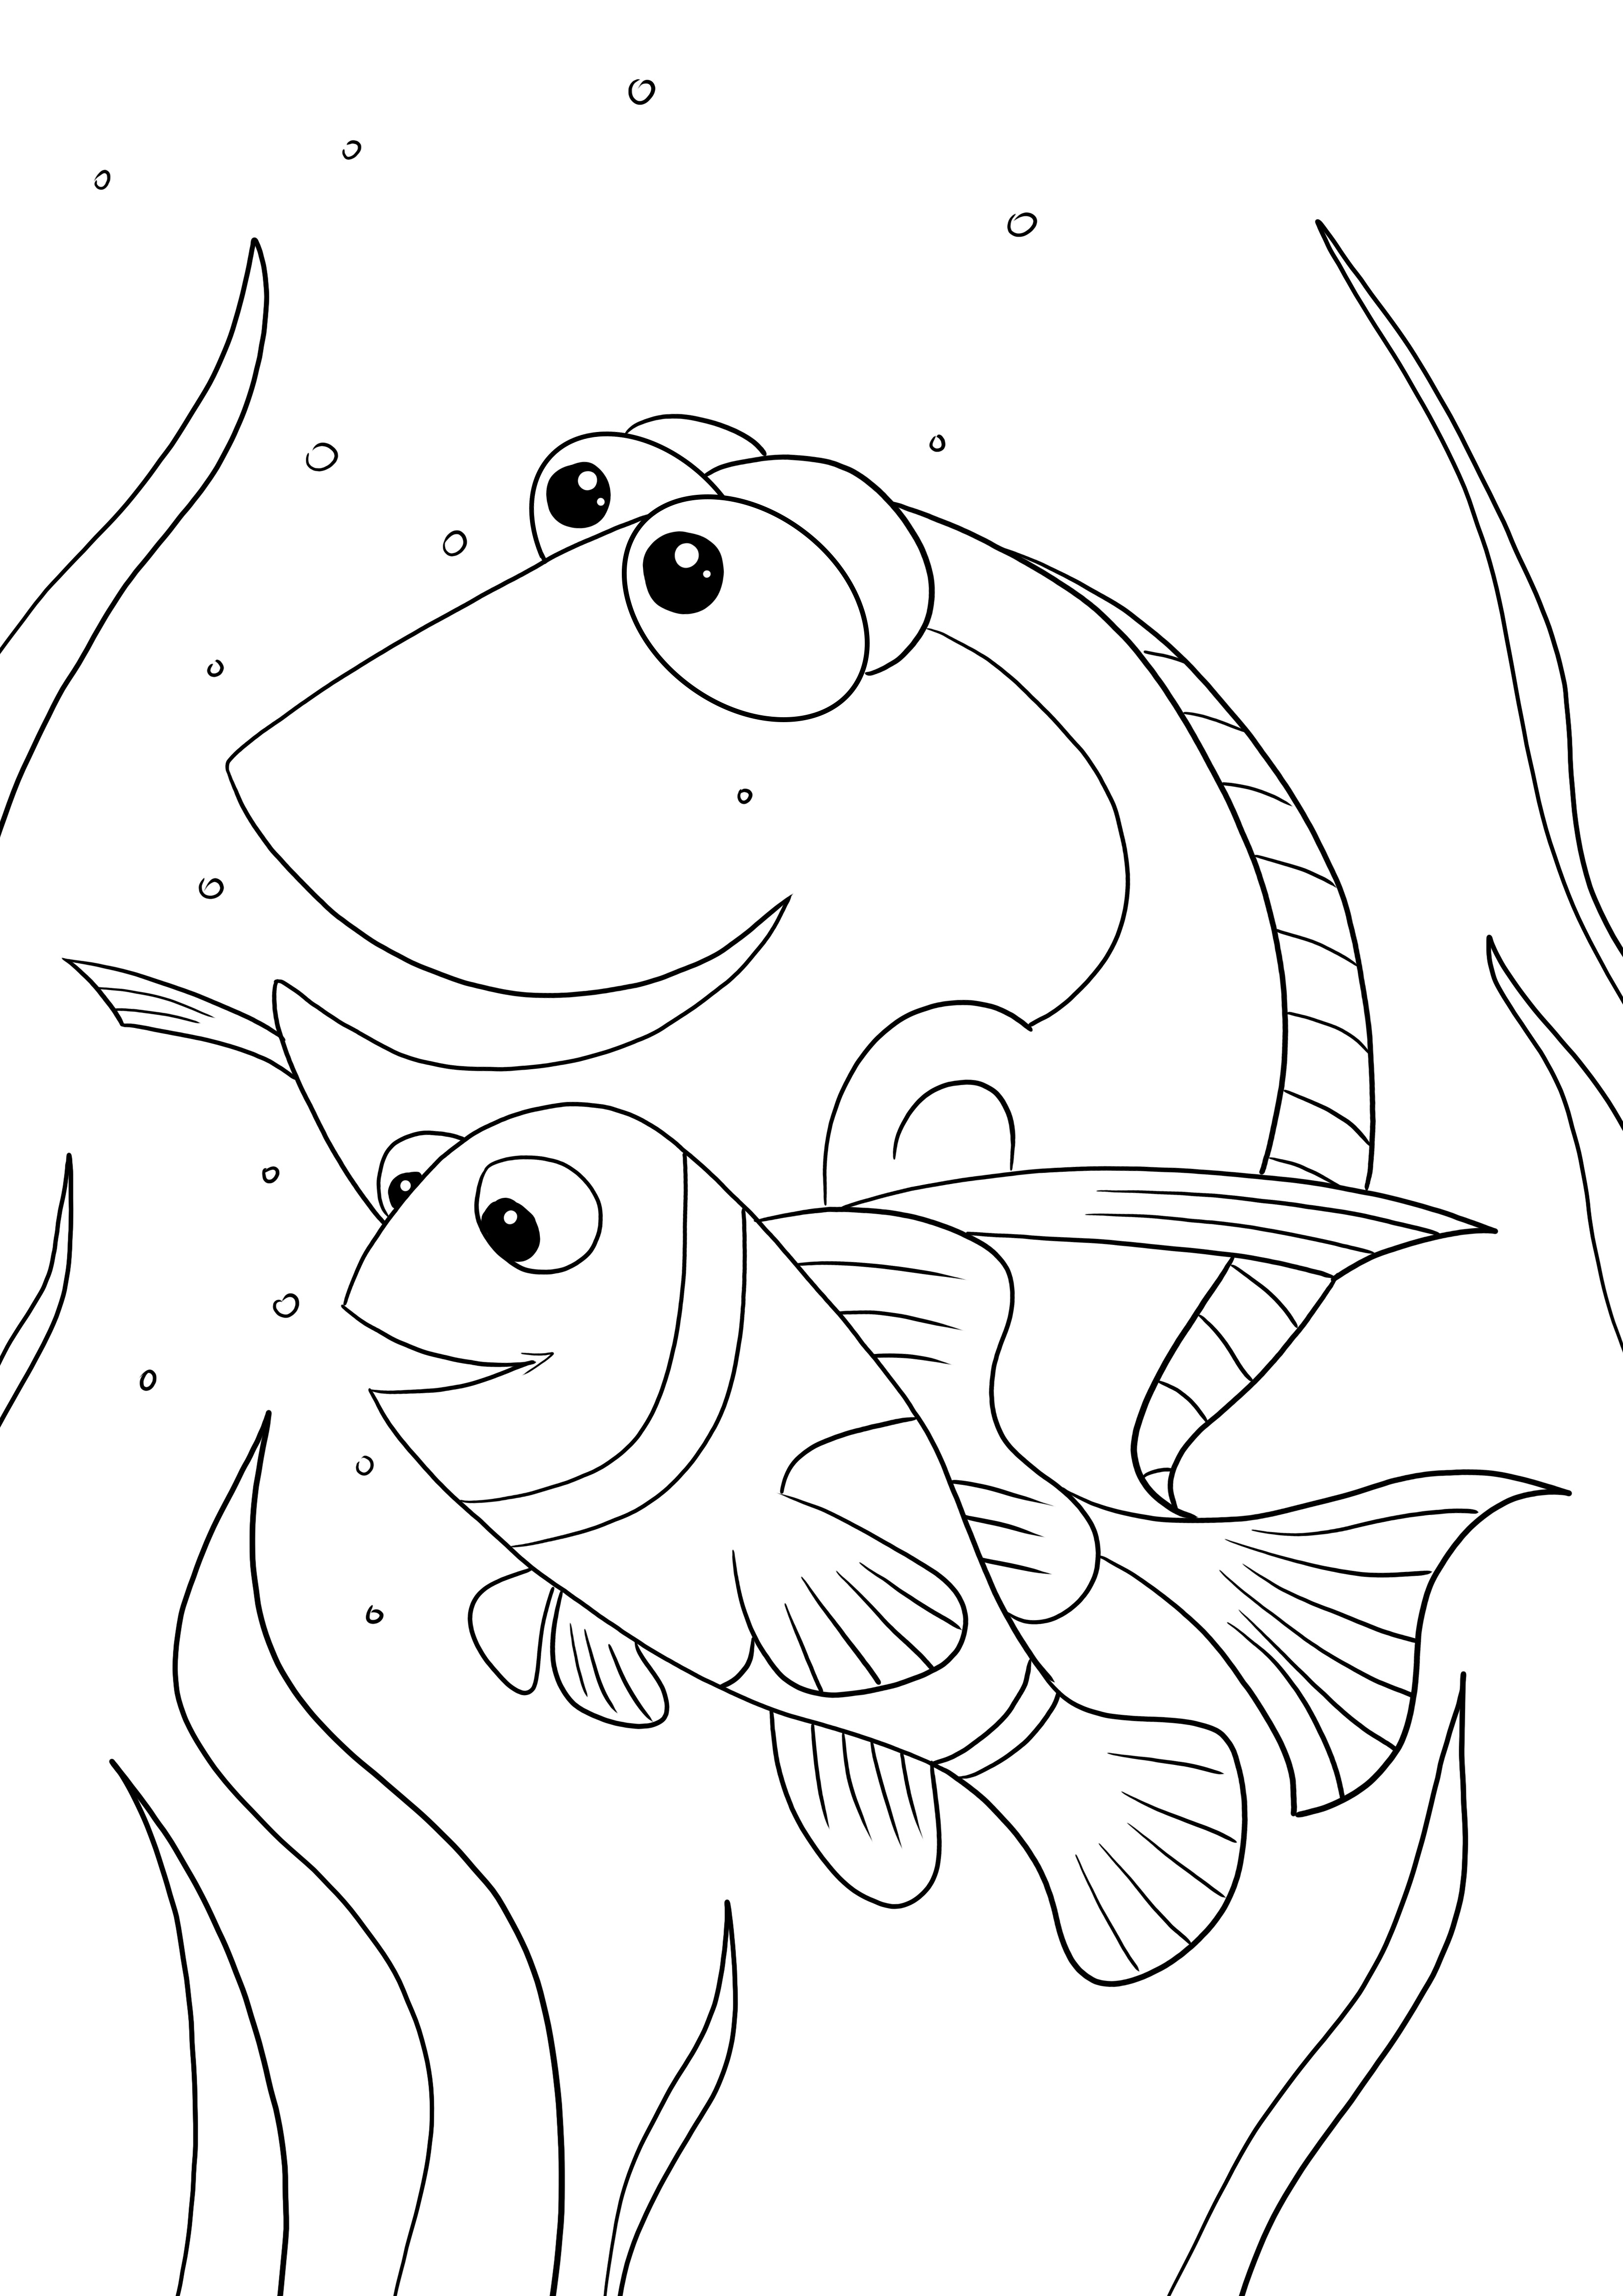 Dibujo para imprimir de Buscando a Nemo para niños para colorear fácil y gratis